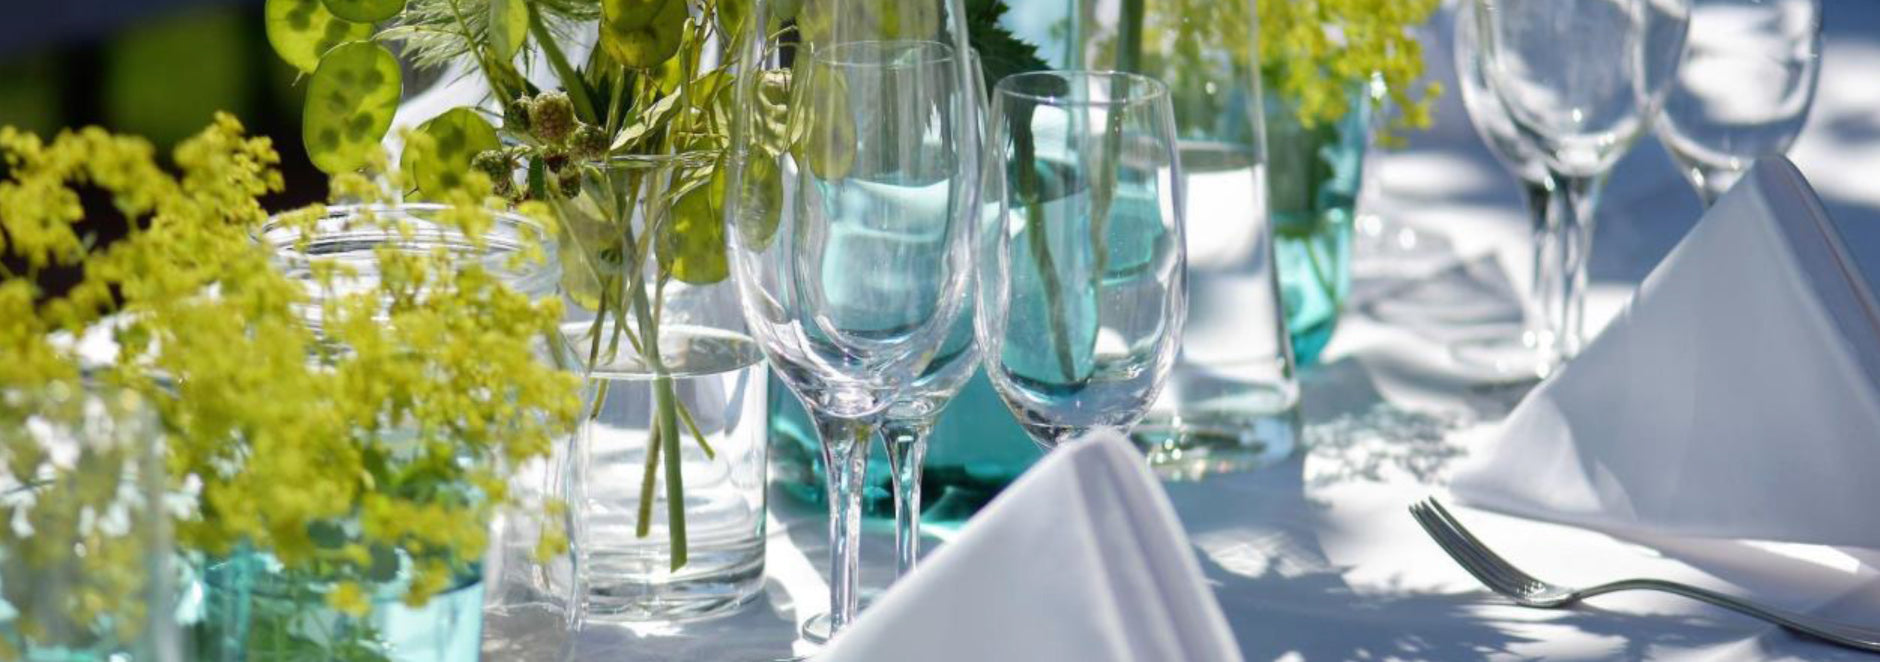 Stoffservietten für die Gastronomie auf festlichem Tisch mit Esstellern, Gläsern und Besteck sowie Dekoration in Szene gesetzt